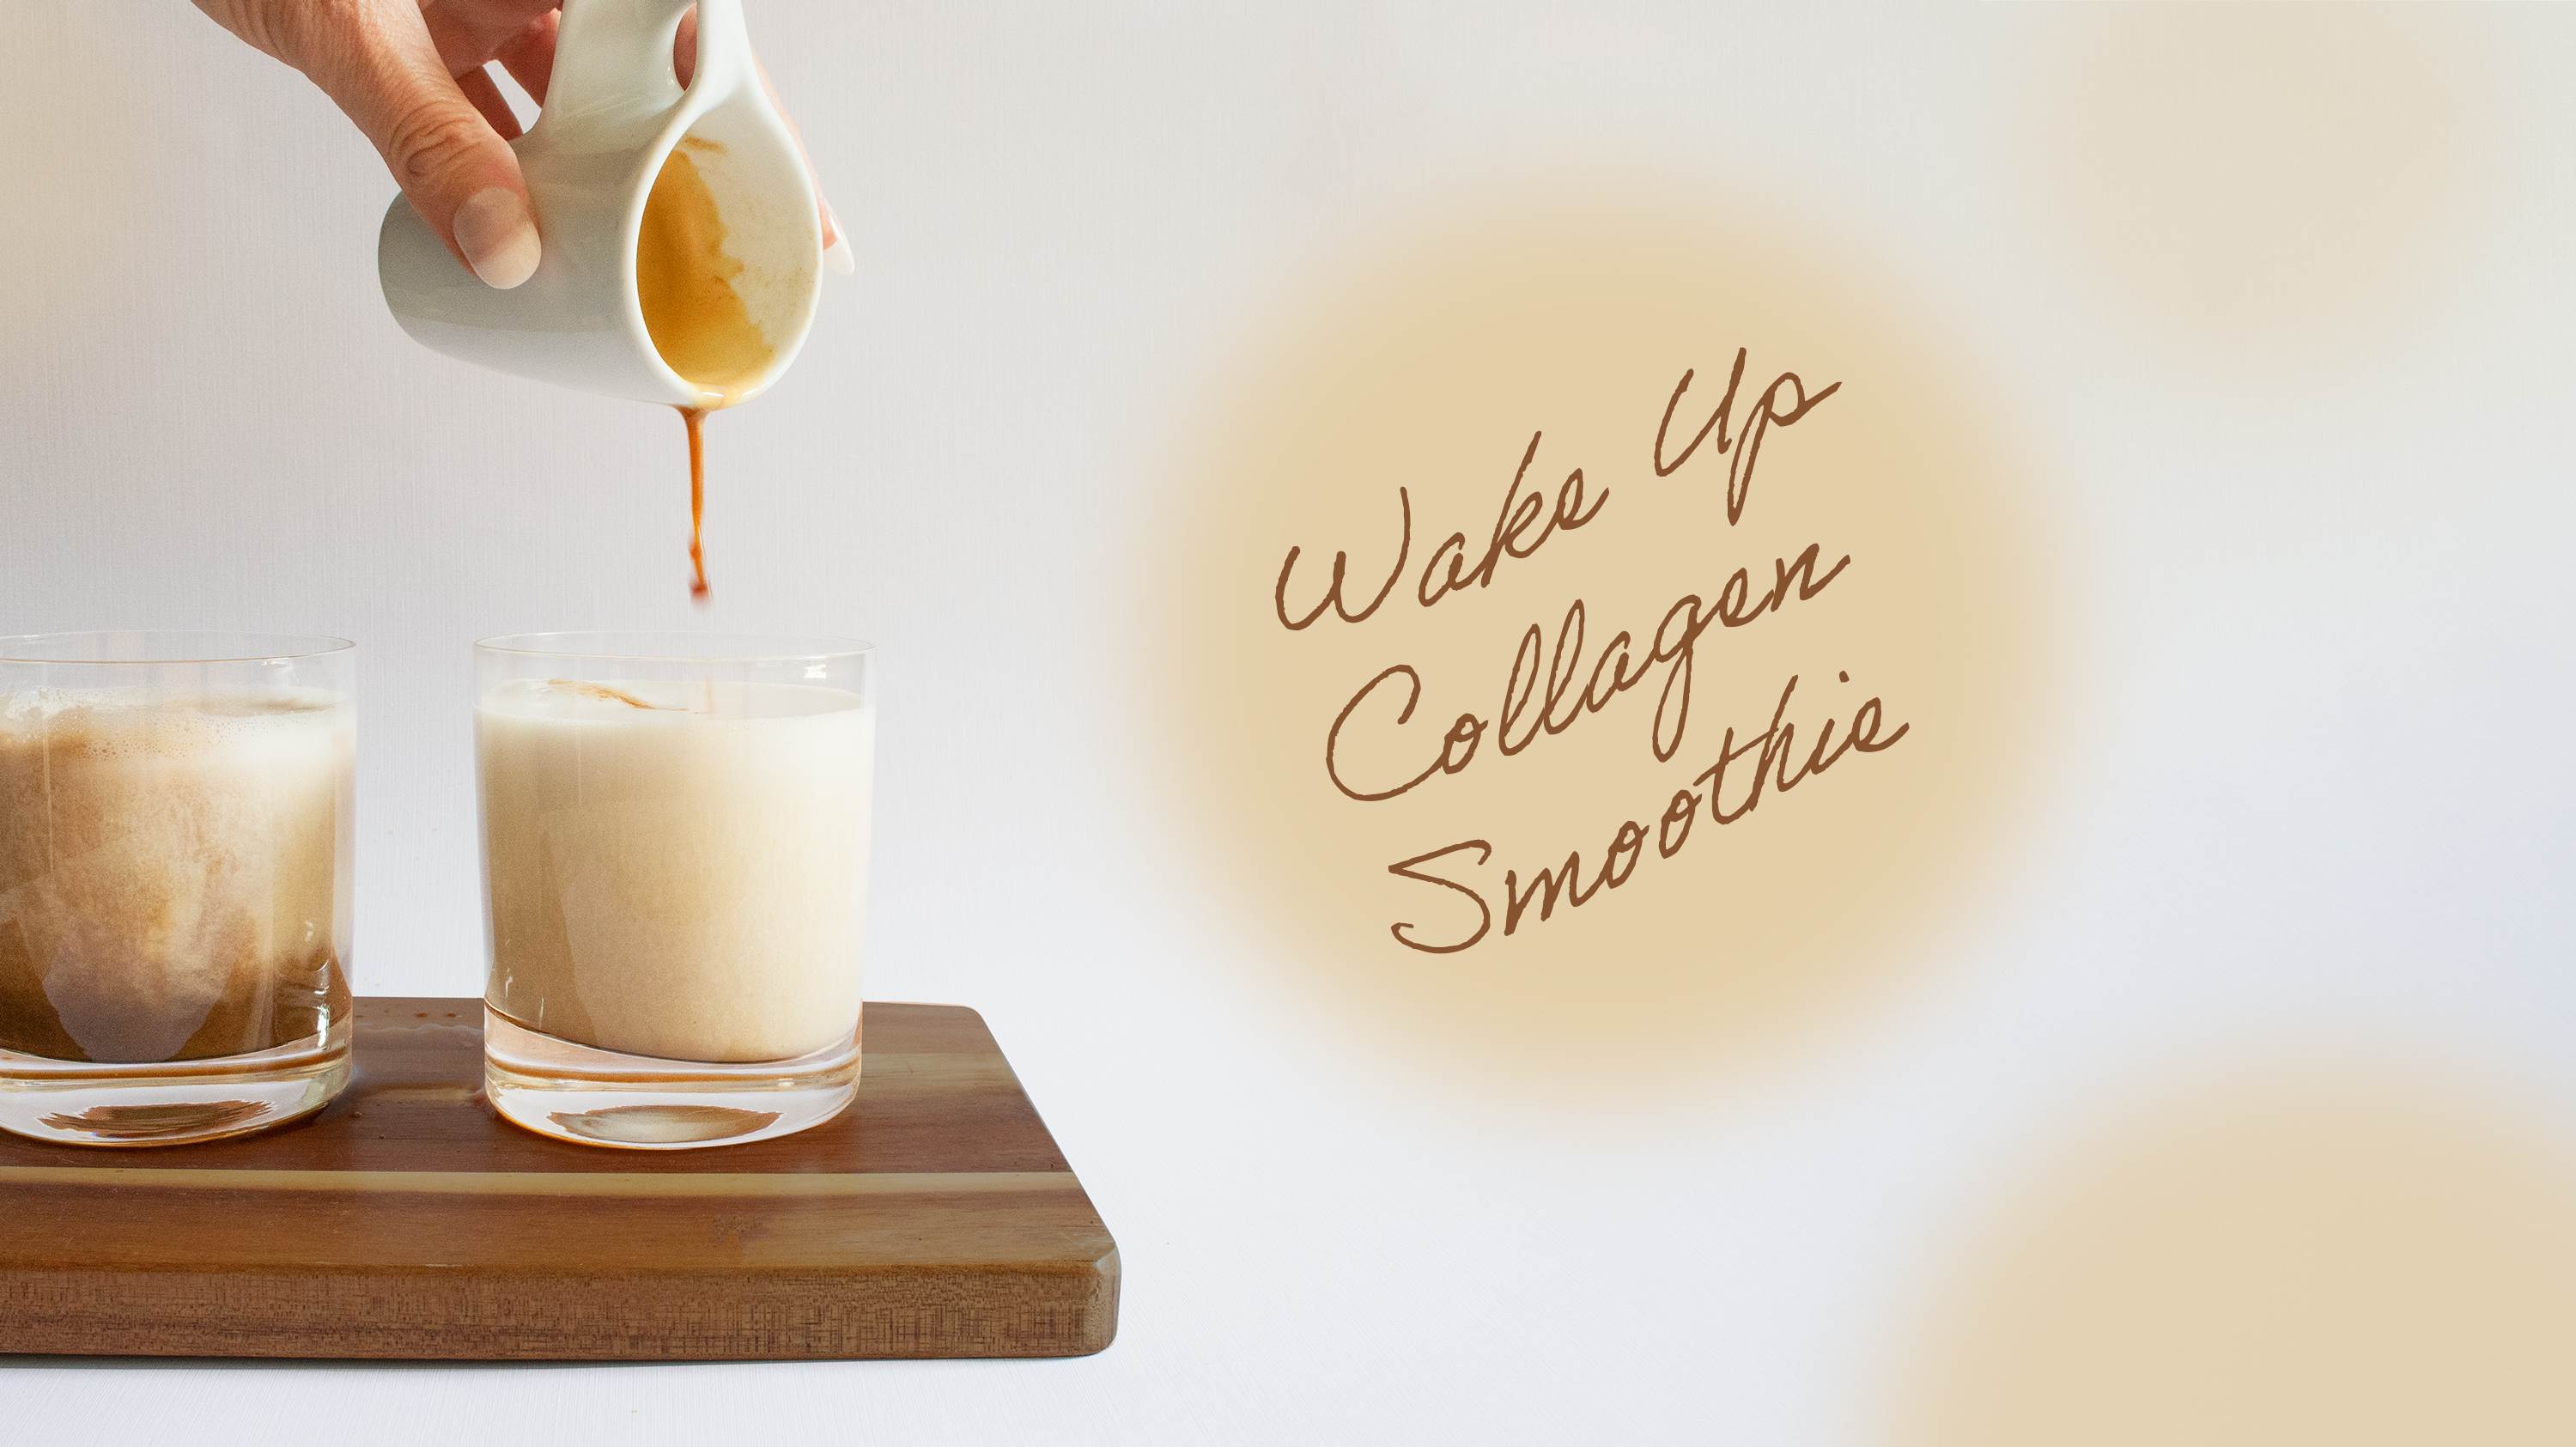 Collagen coffee smoothie